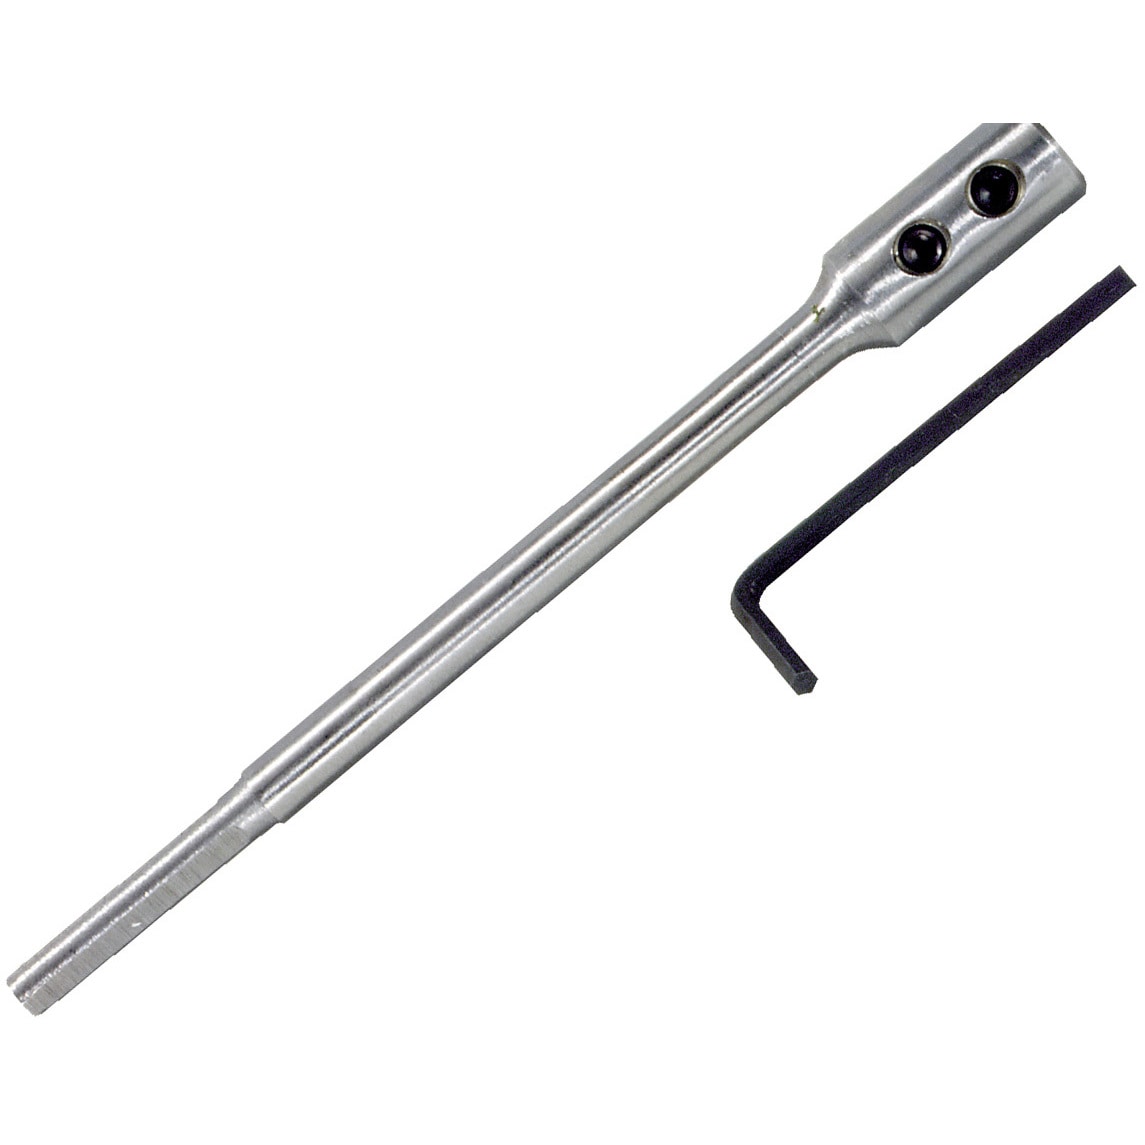 Irwin 88702 Speedbor 6-inch Spade Drill Bit Extension | eBay